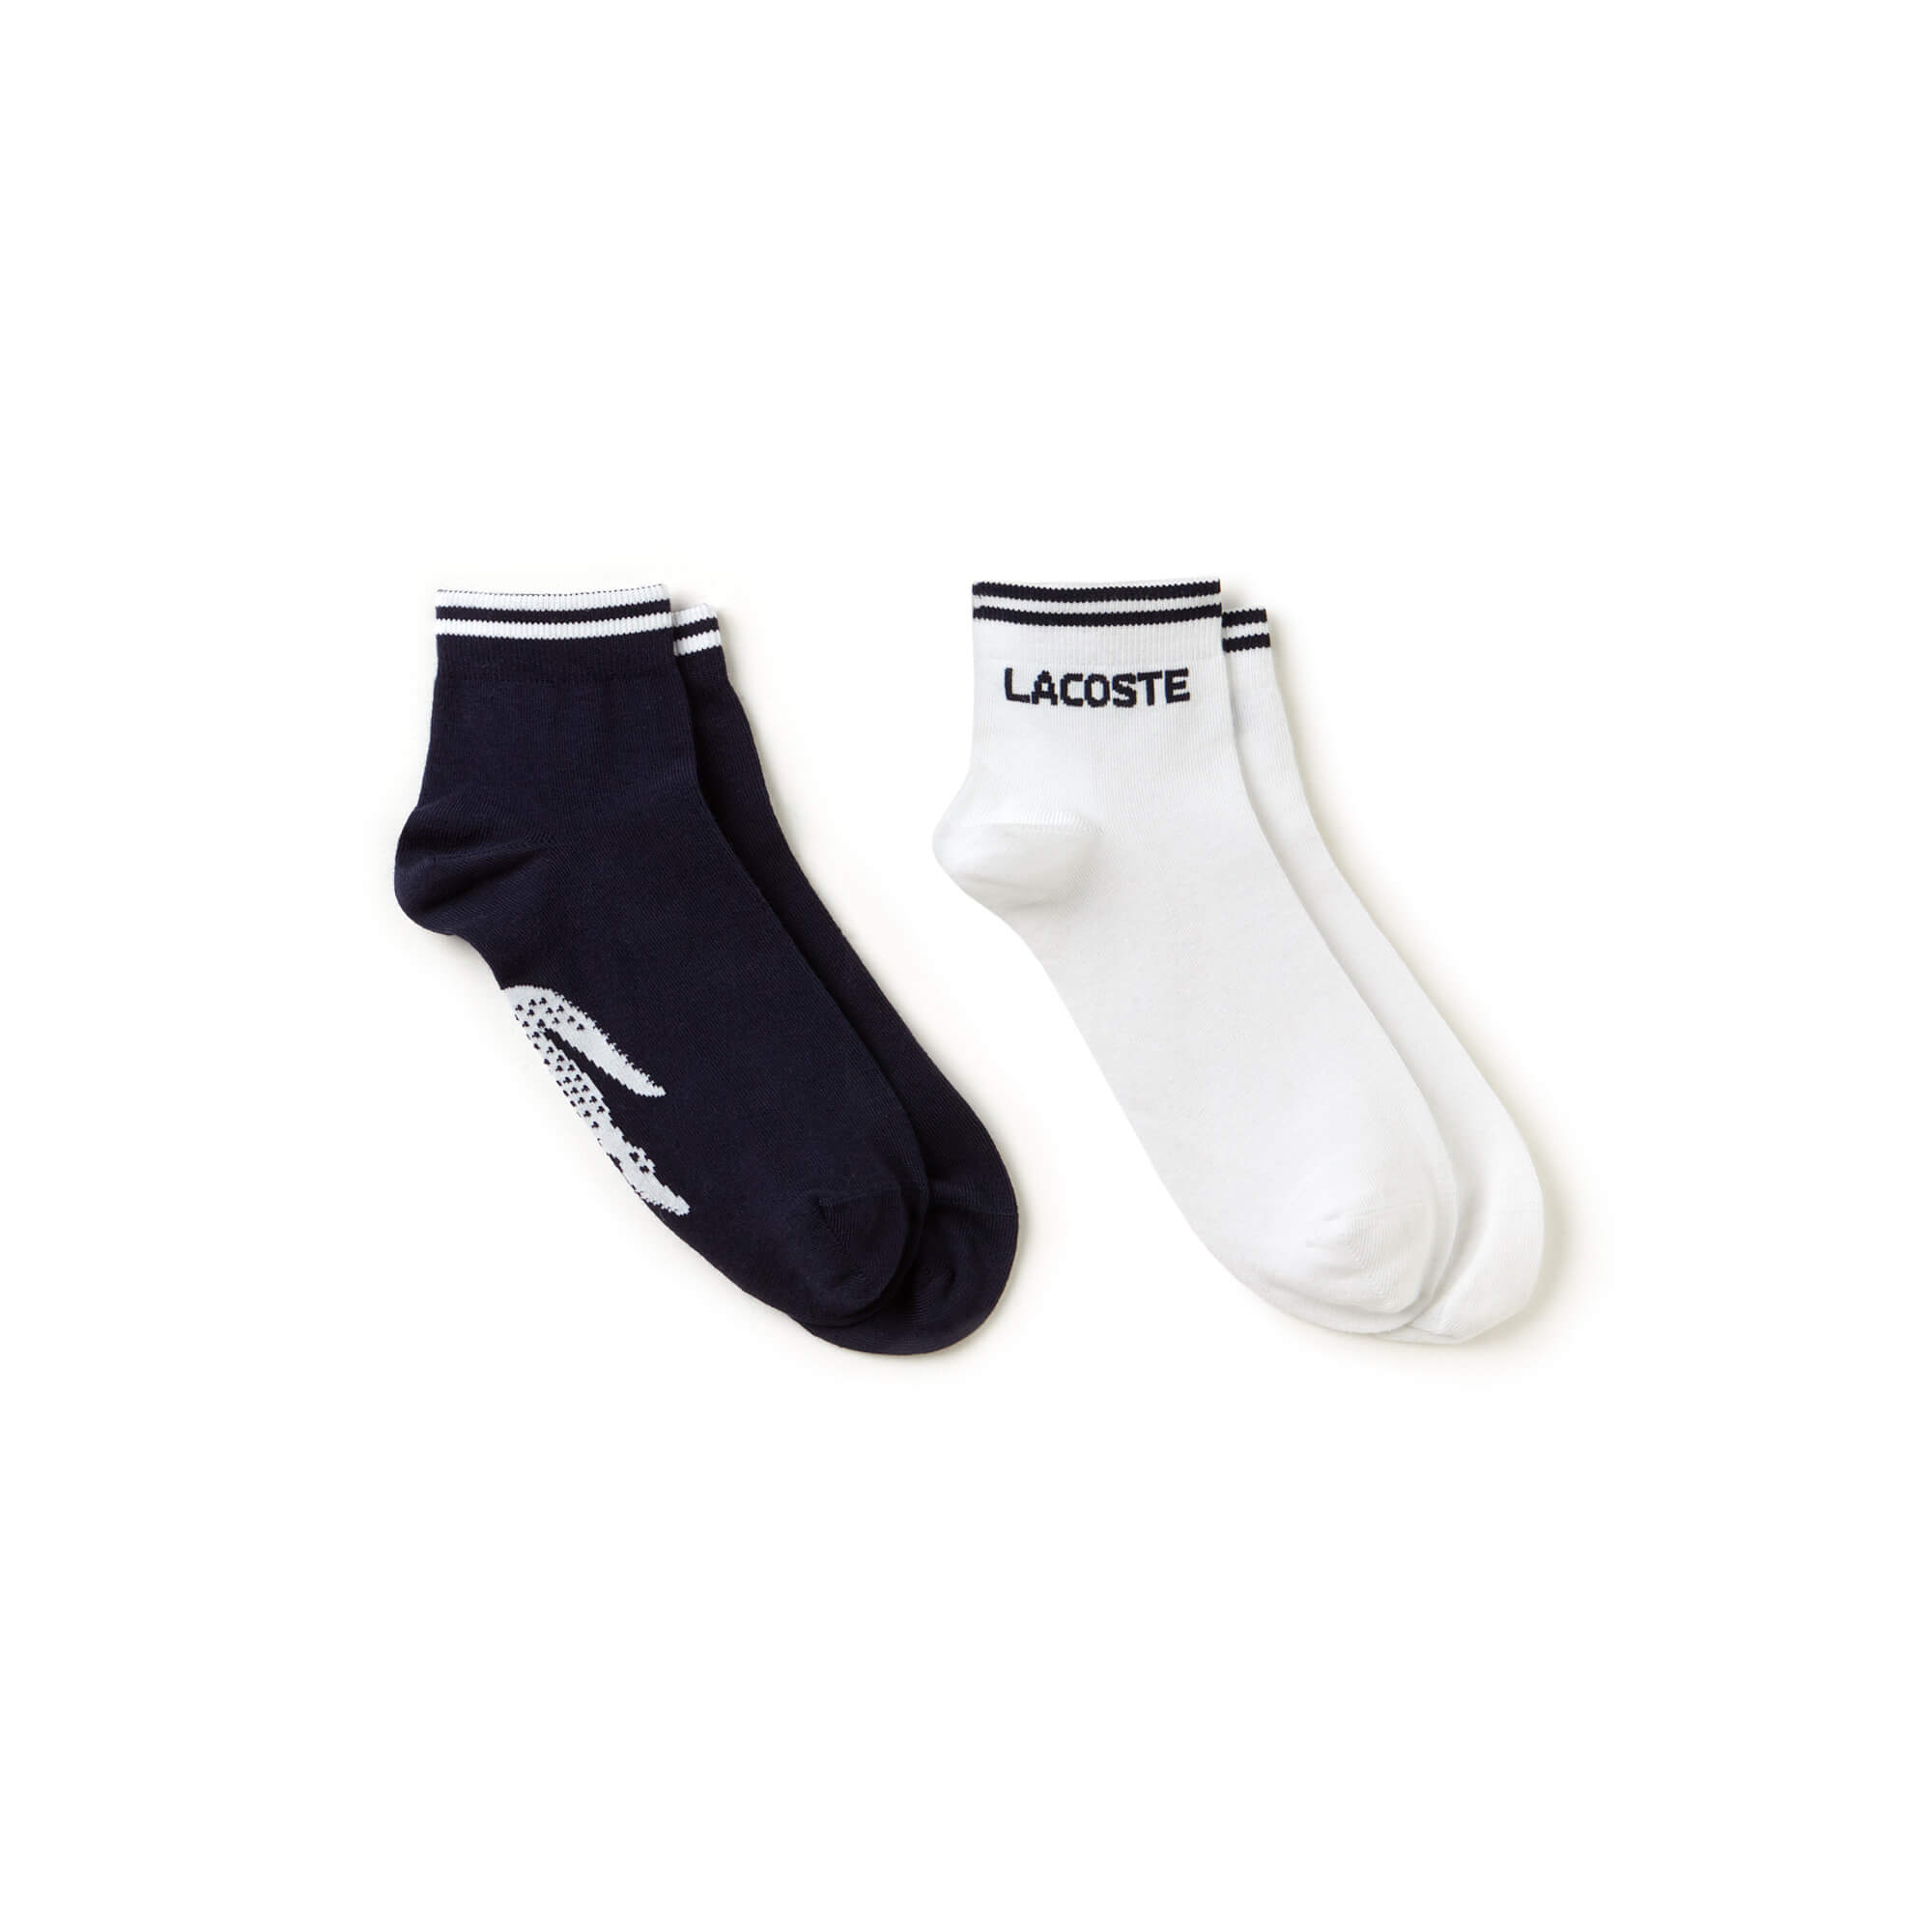 Lacoste Unisex Sport Lacivert-Beyaz 2'li Çorap. 2